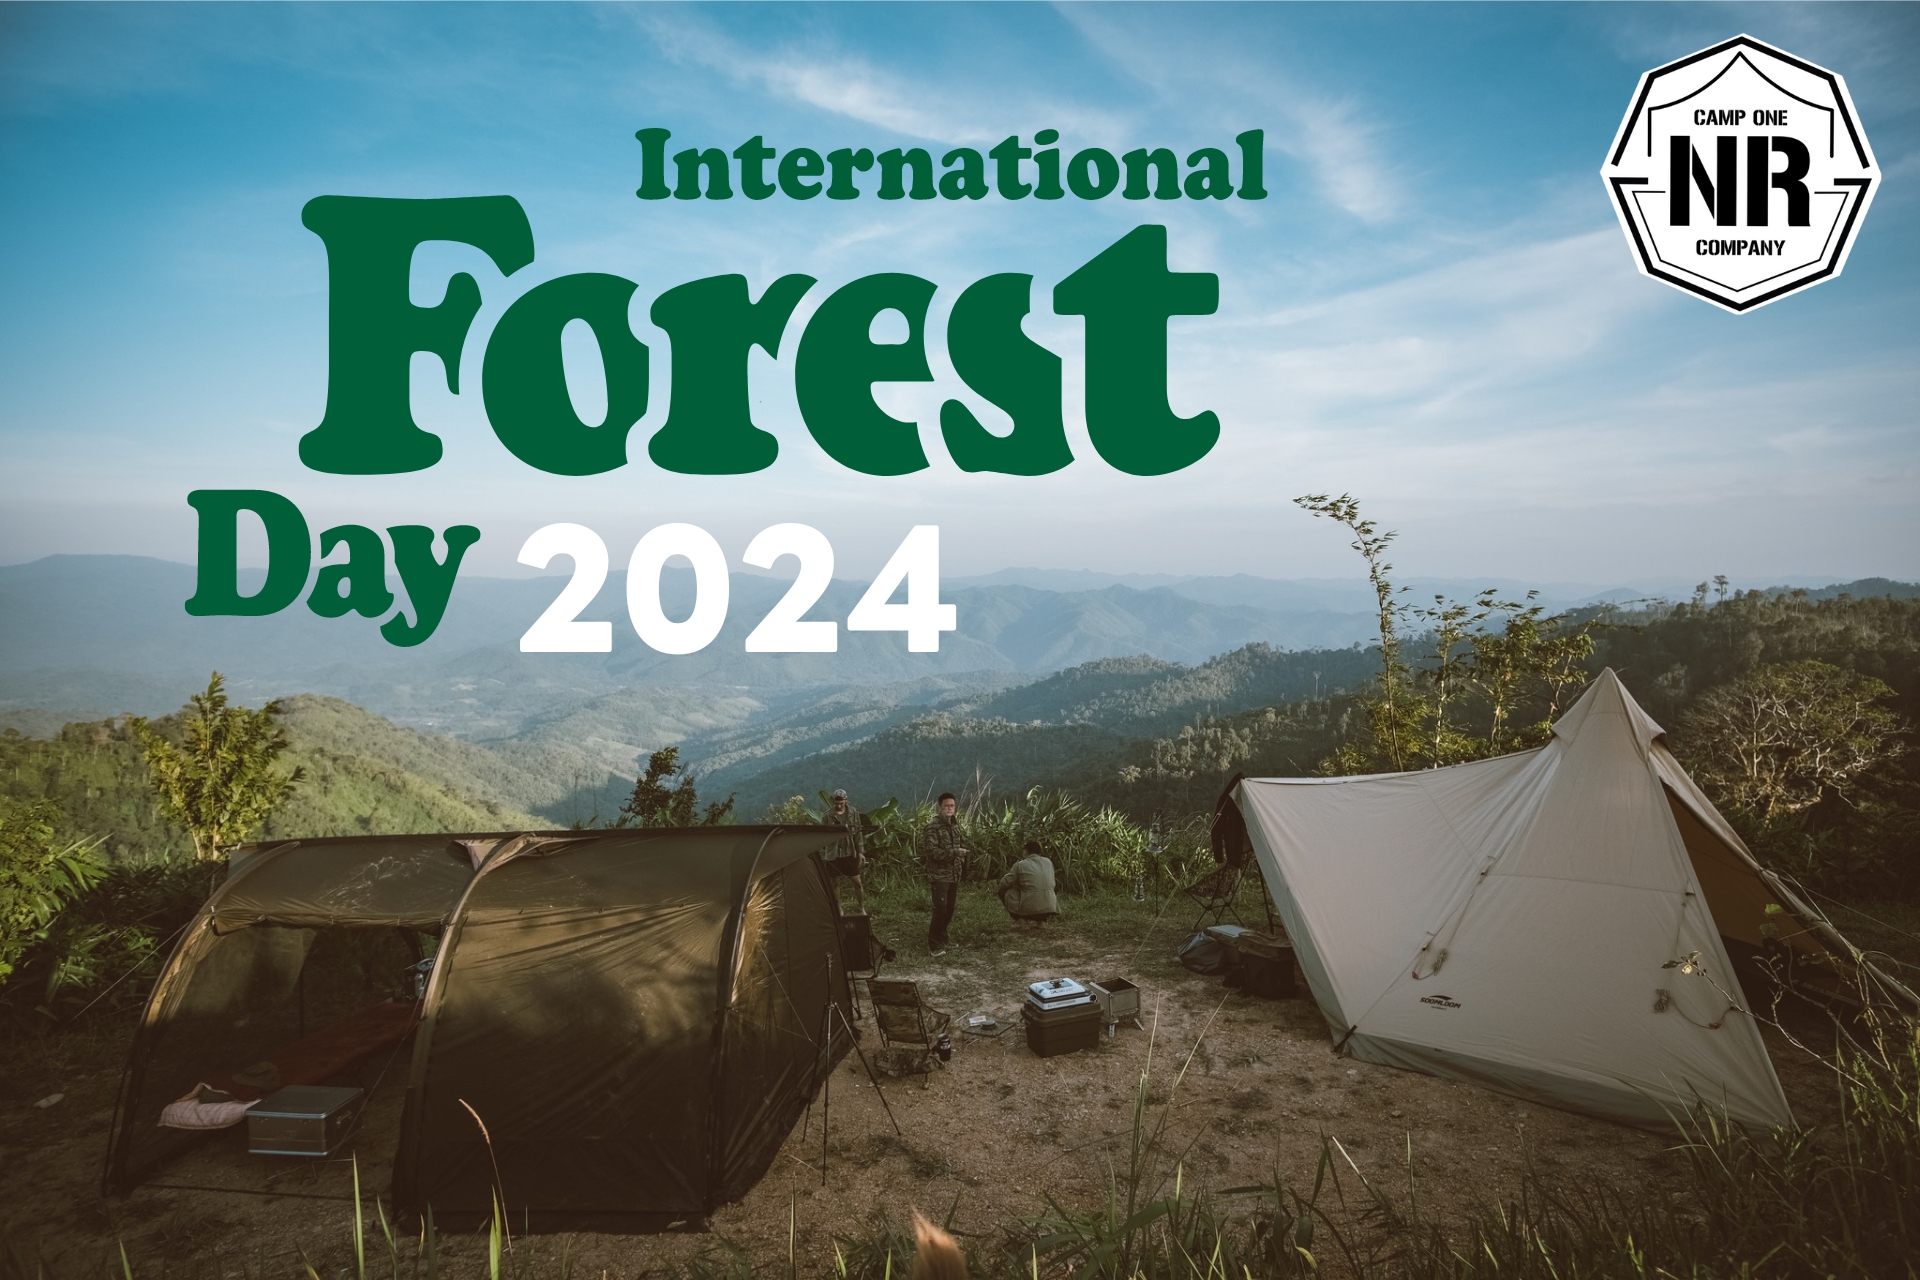 21 มีนาคม วันป่าไม้โลก (WORLD FORESTRY DAY)